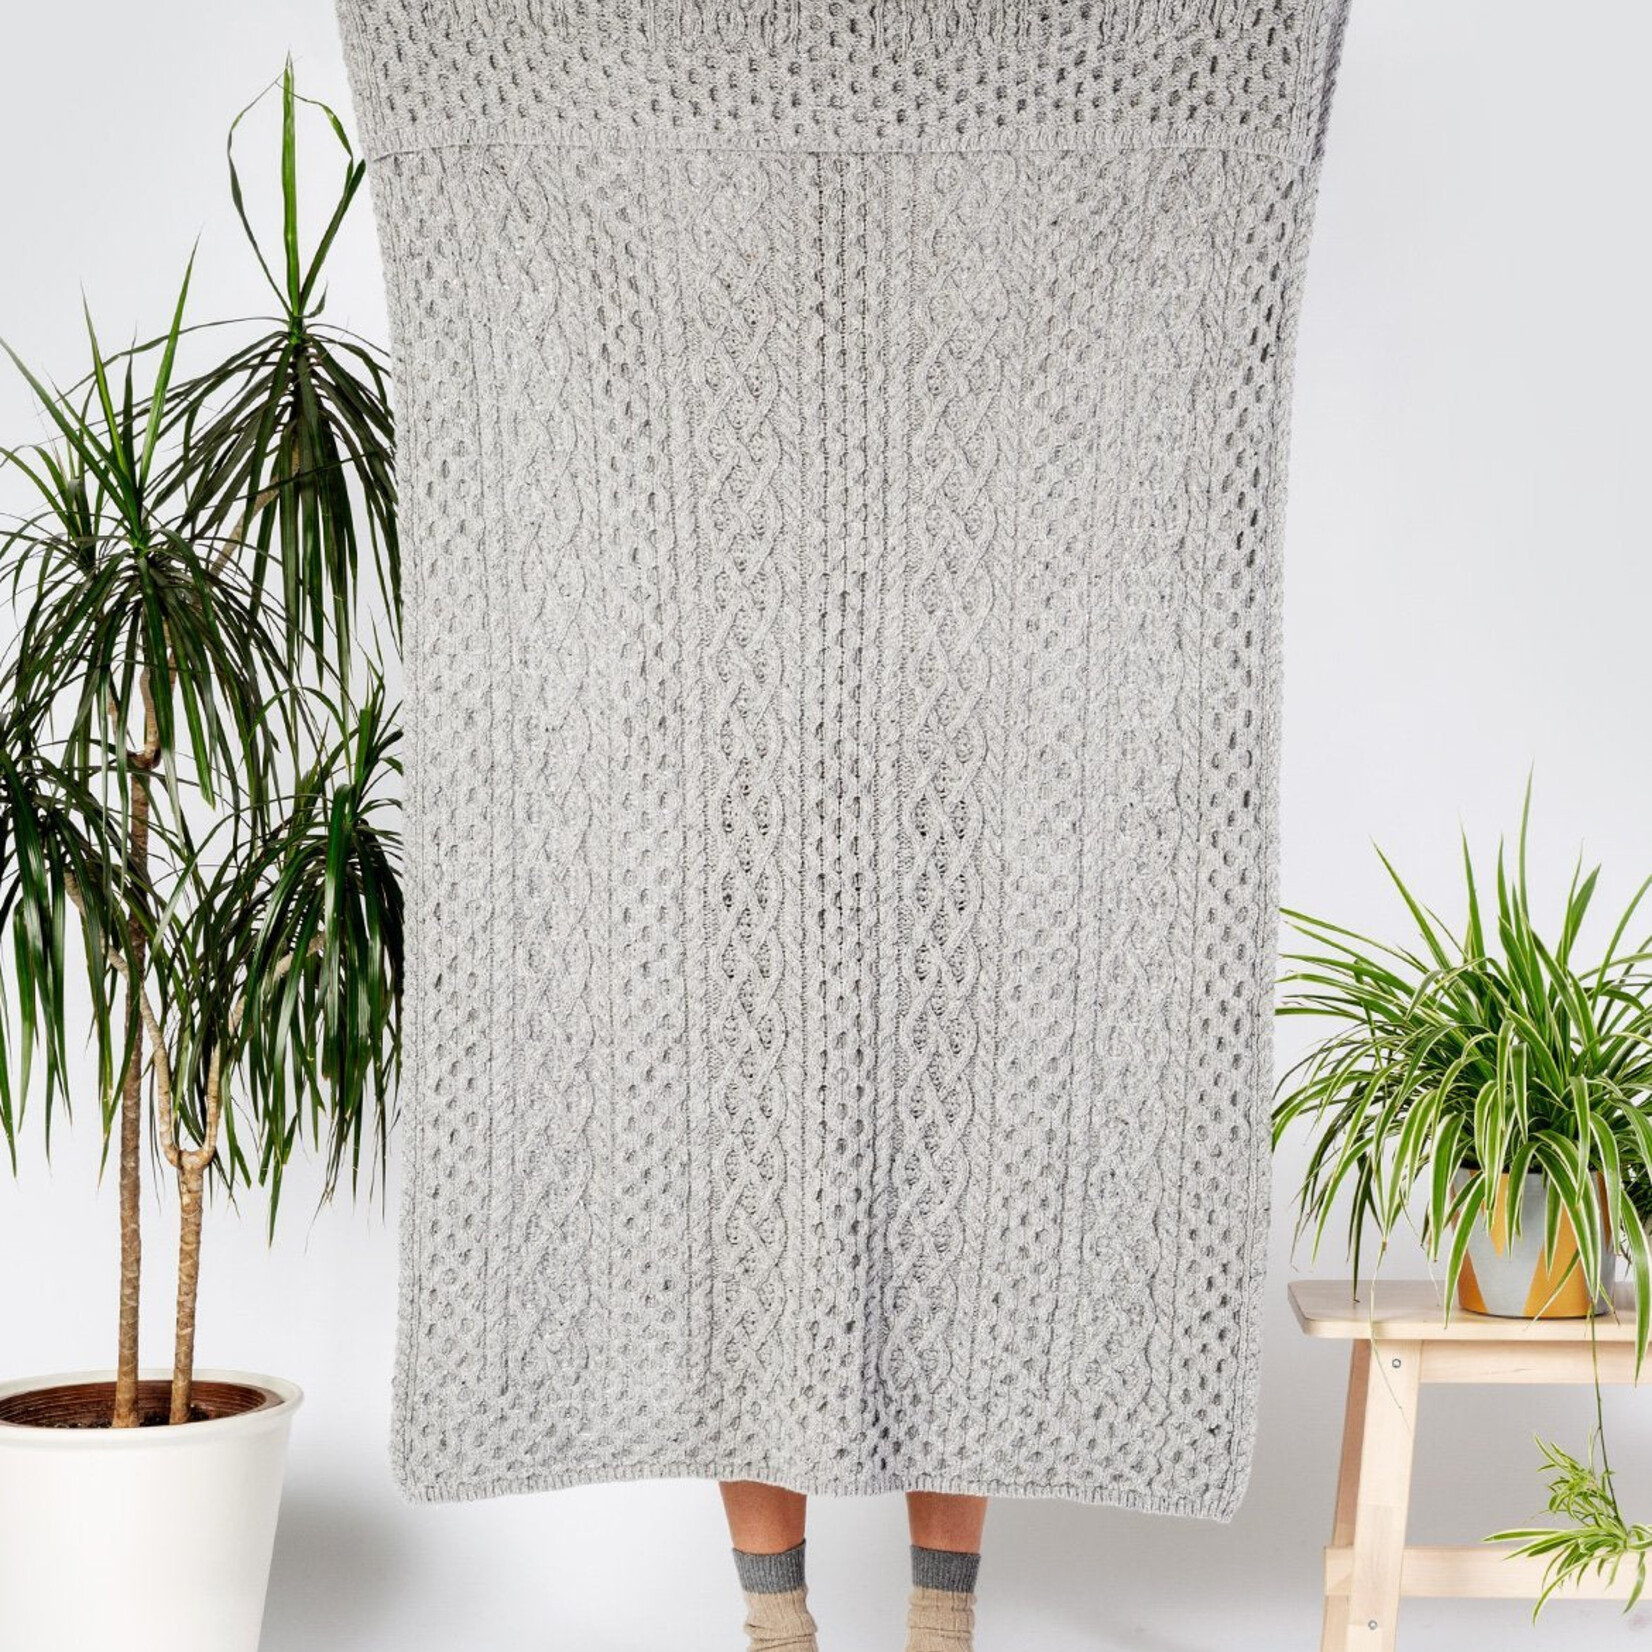 IrelandsEye Knitwear Aran Throw - Luxe Light Grey